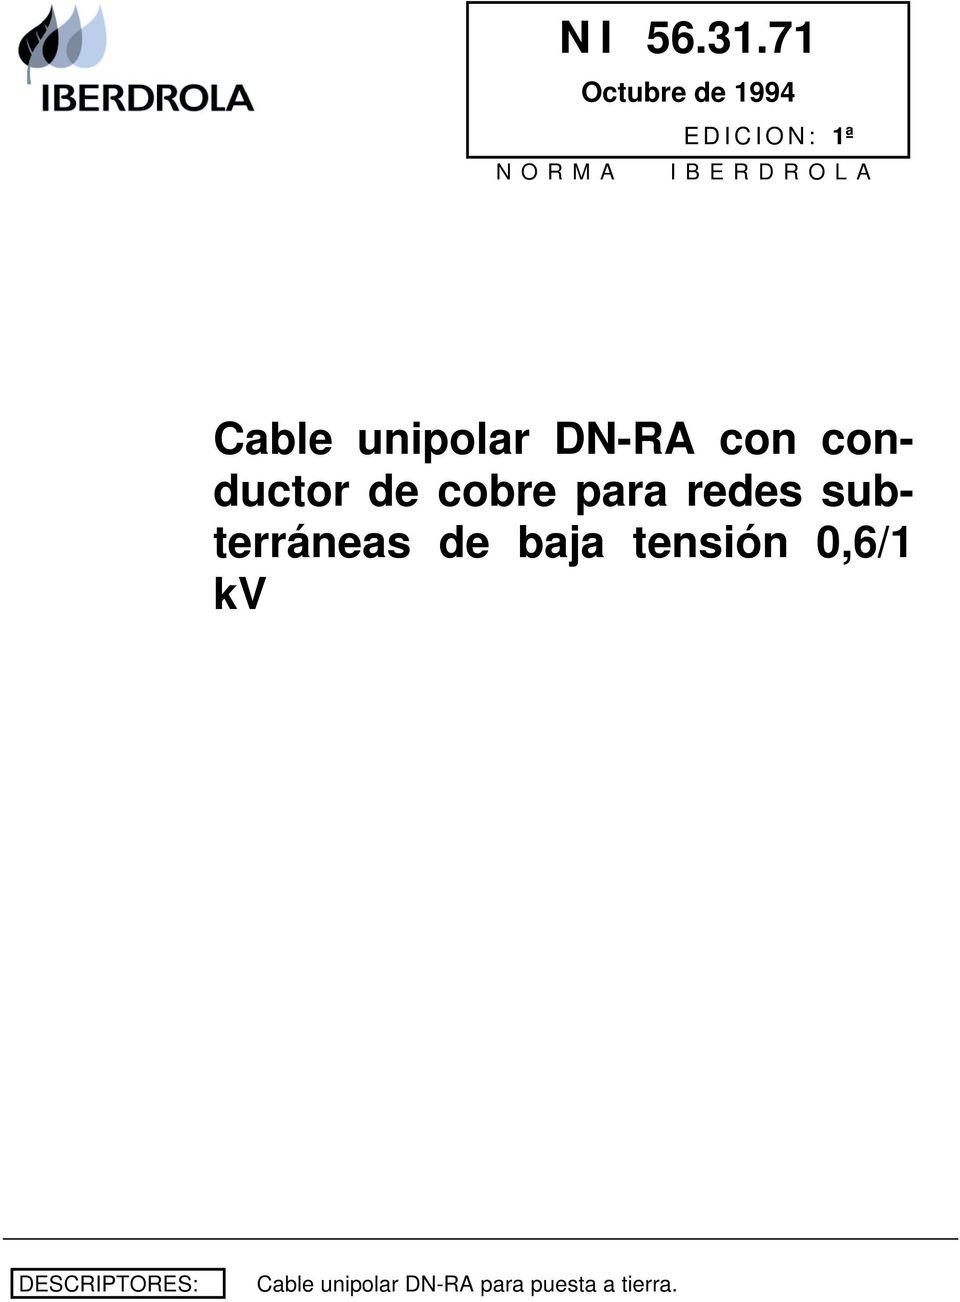 Cable unipolar DN-RA con conductor de cobre para